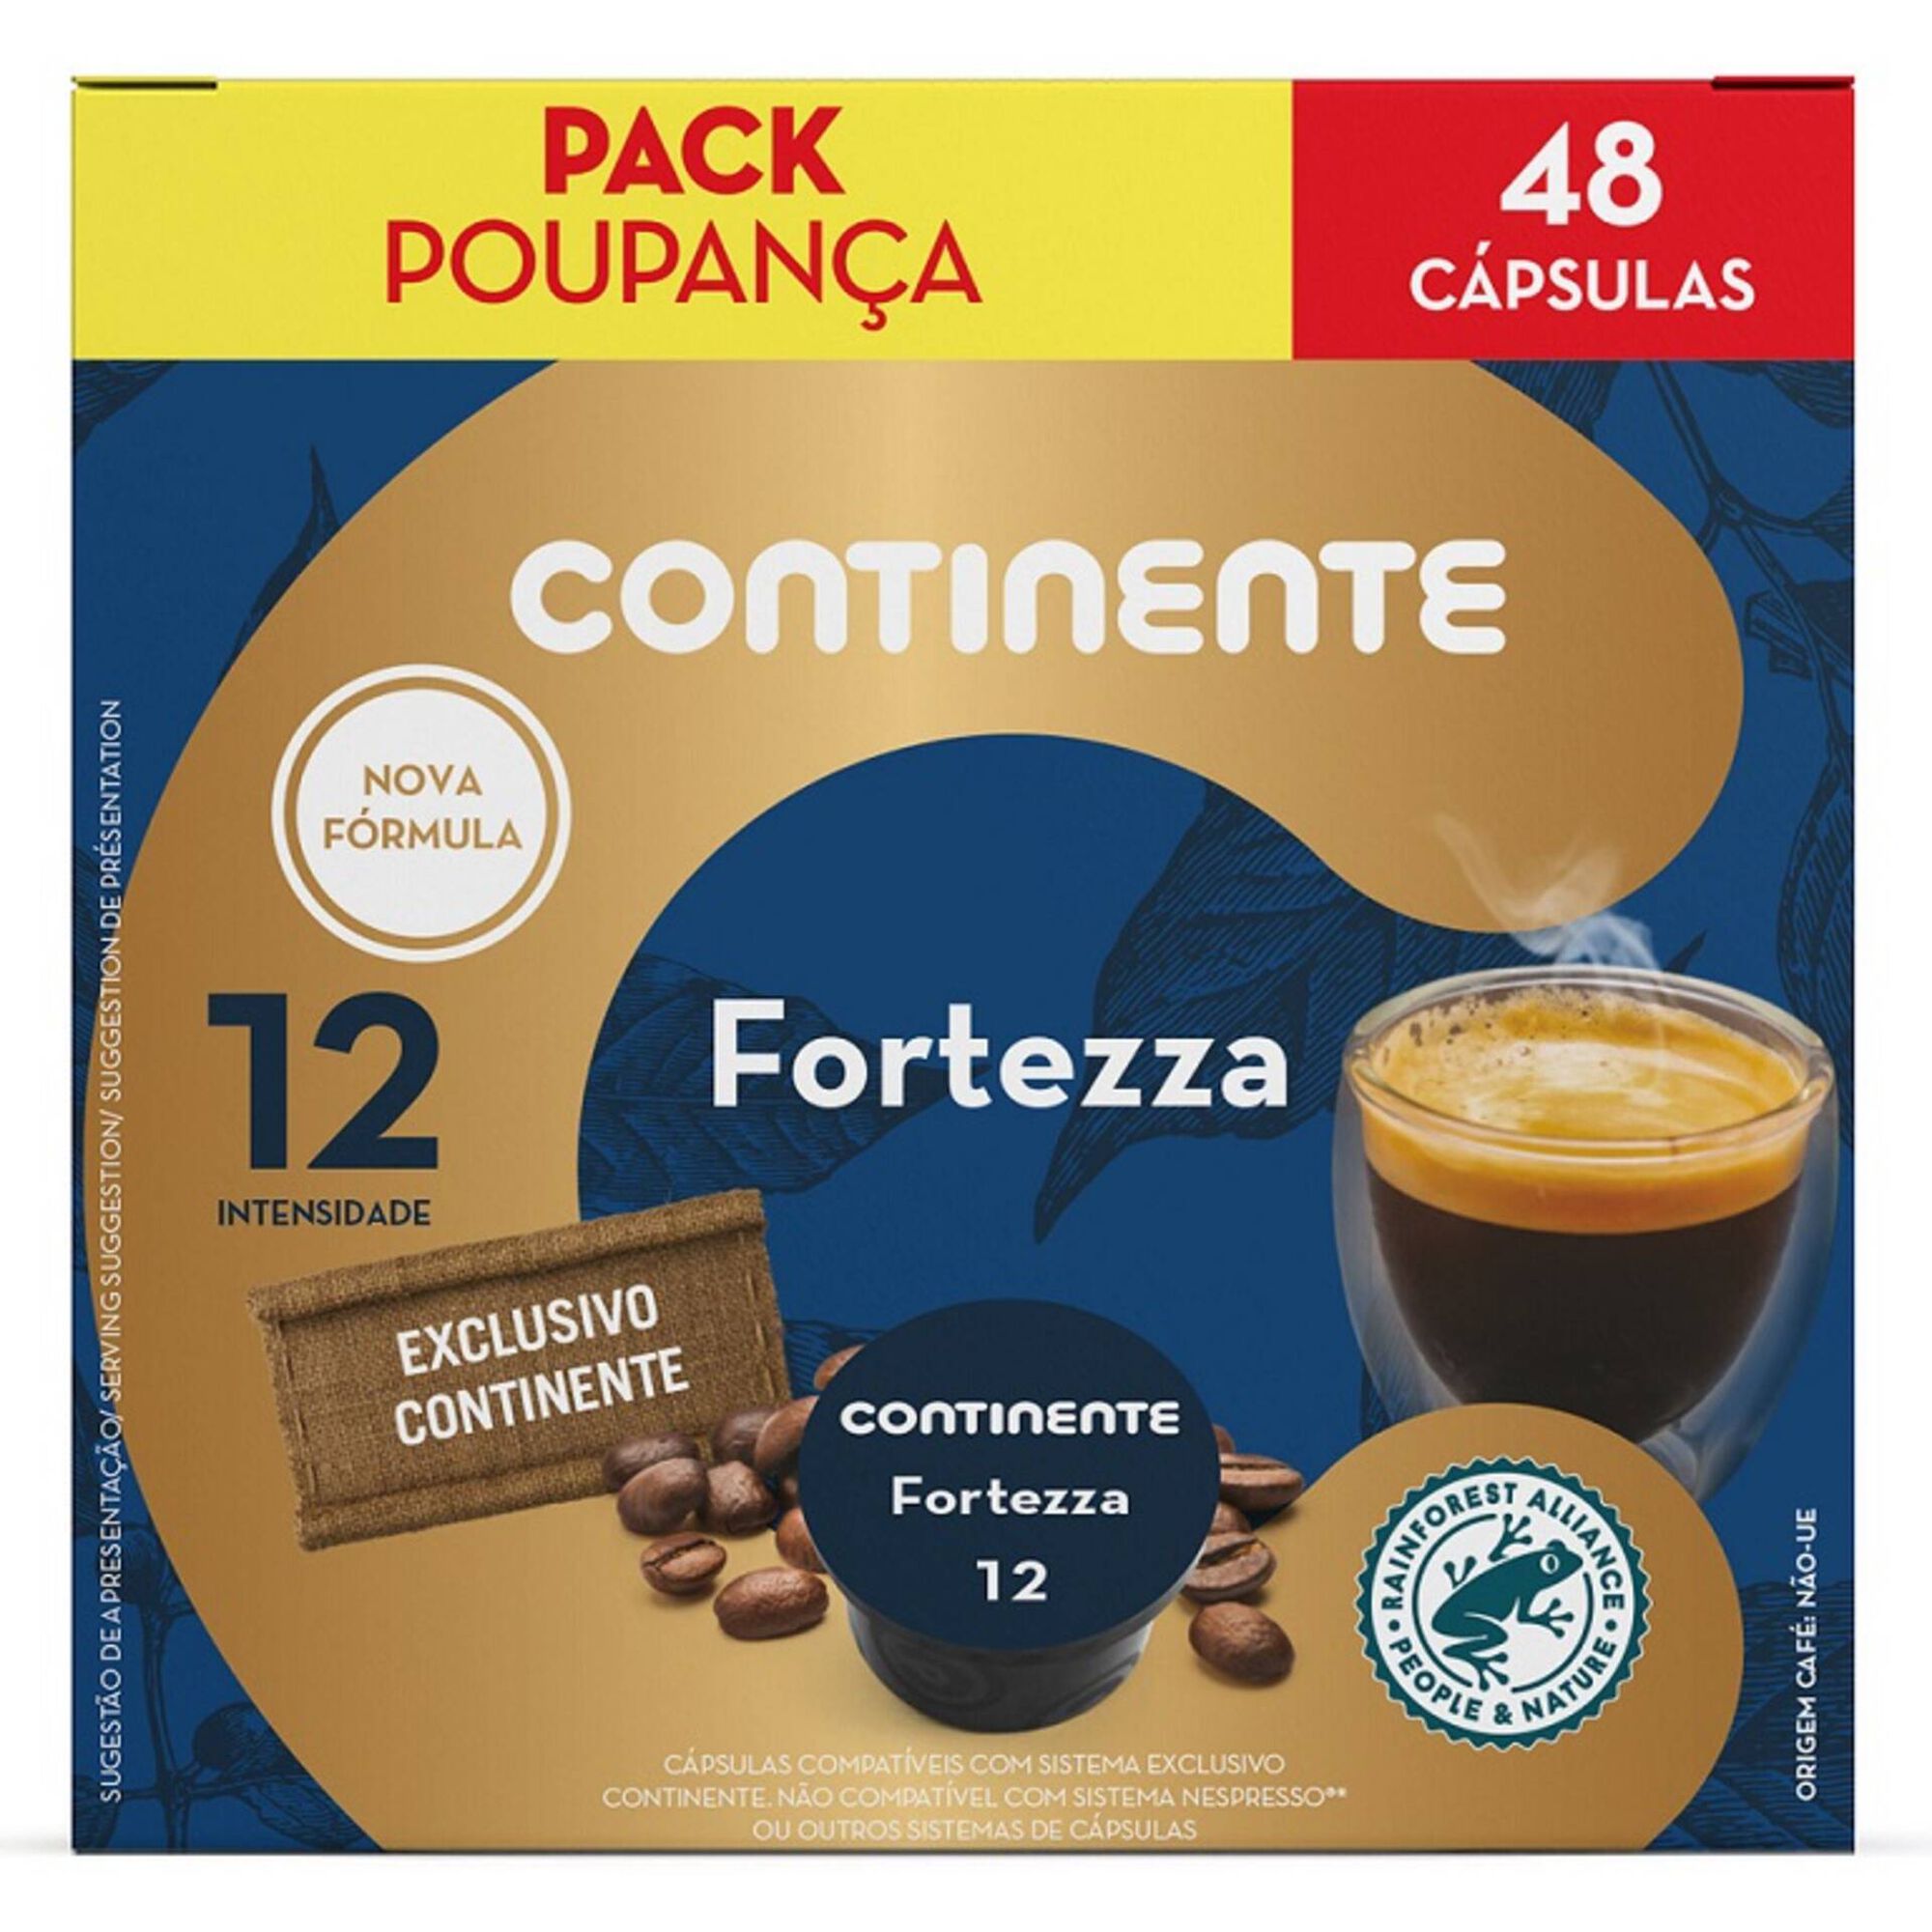 Cápsulas de Café Fortezza Int 12 Pack Poupança